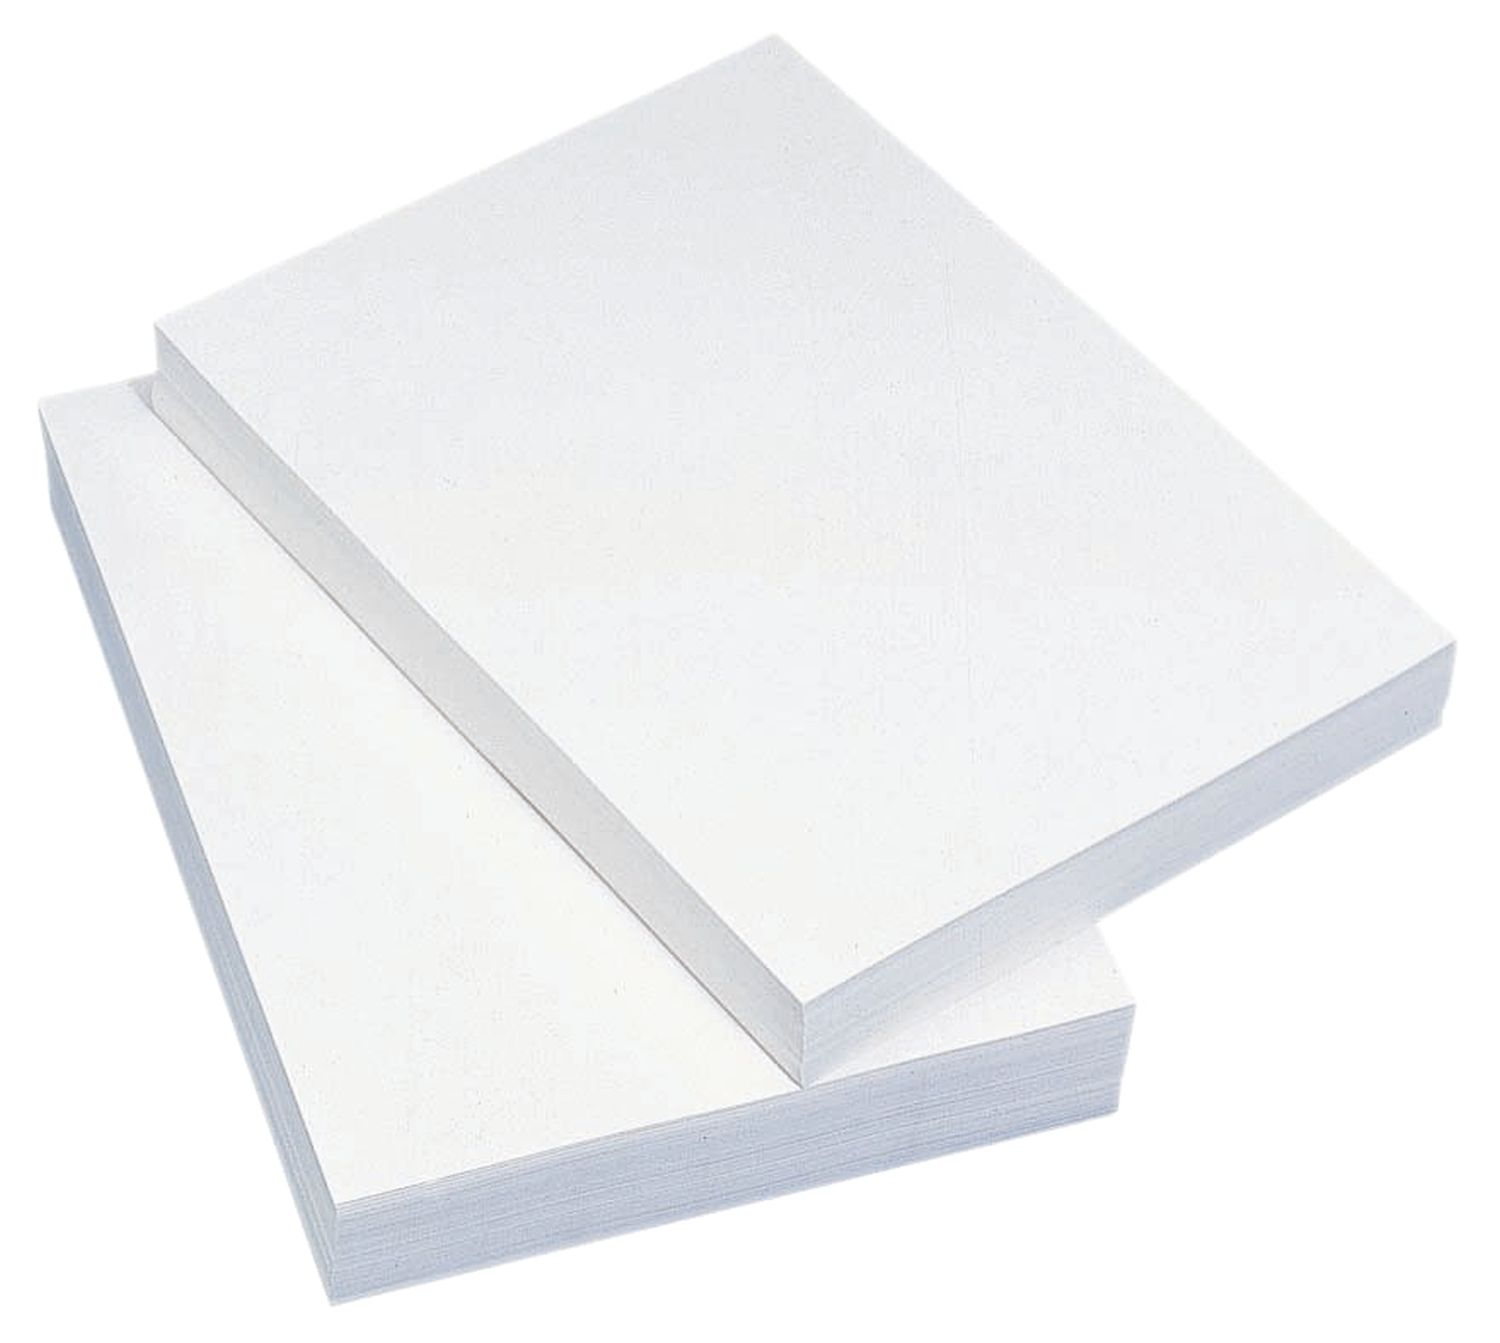 Kopierpapier günstig Standard 4117L80B DIN A6, 80 g/qm, weiß, 2000 Blatt